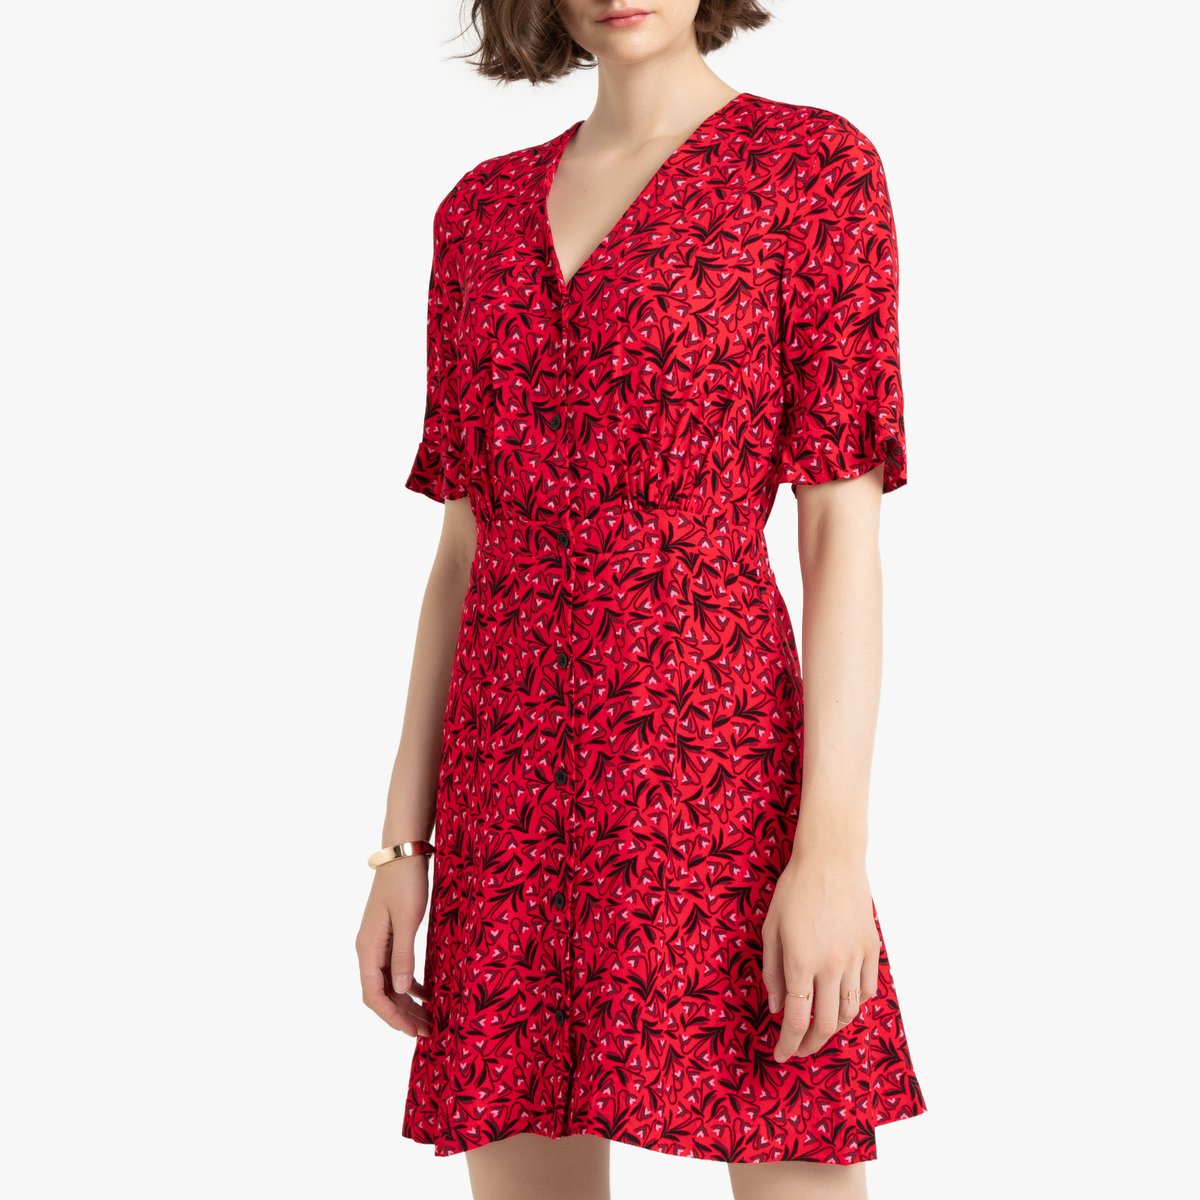 Платье La Redoute Короткое расклешенное с V-образным вырезом и короткими рукавами 34 (FR) - 40 (RUS) красный, размер 34 (FR) - 40 (RUS) Короткое расклешенное с V-образным вырезом и короткими рукавами 34 (FR) - 40 (RUS) красный - фото 1